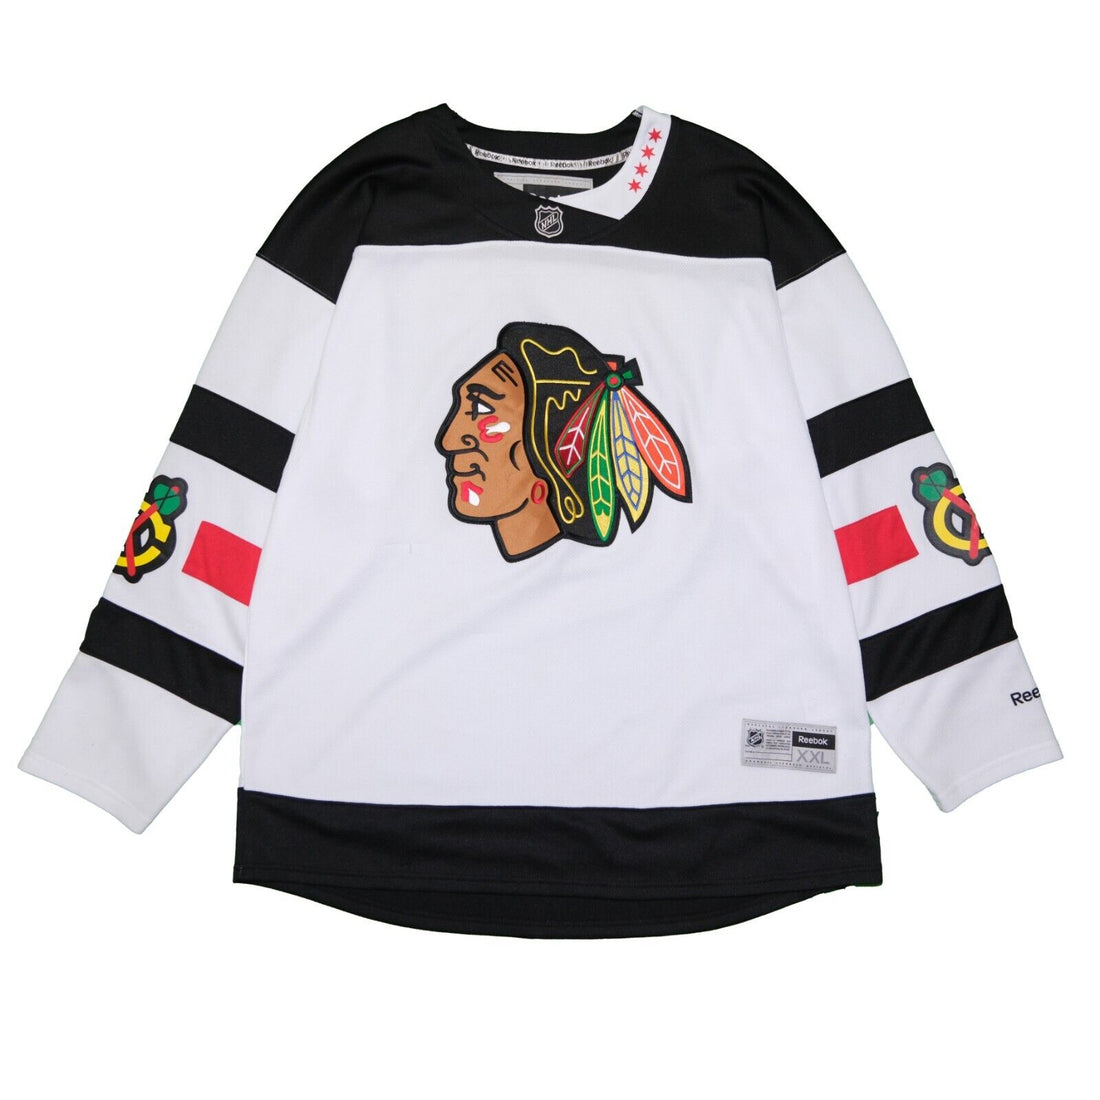 Chicago Blackhawks Reebok Hockey Jersey Size 2XL White NHL